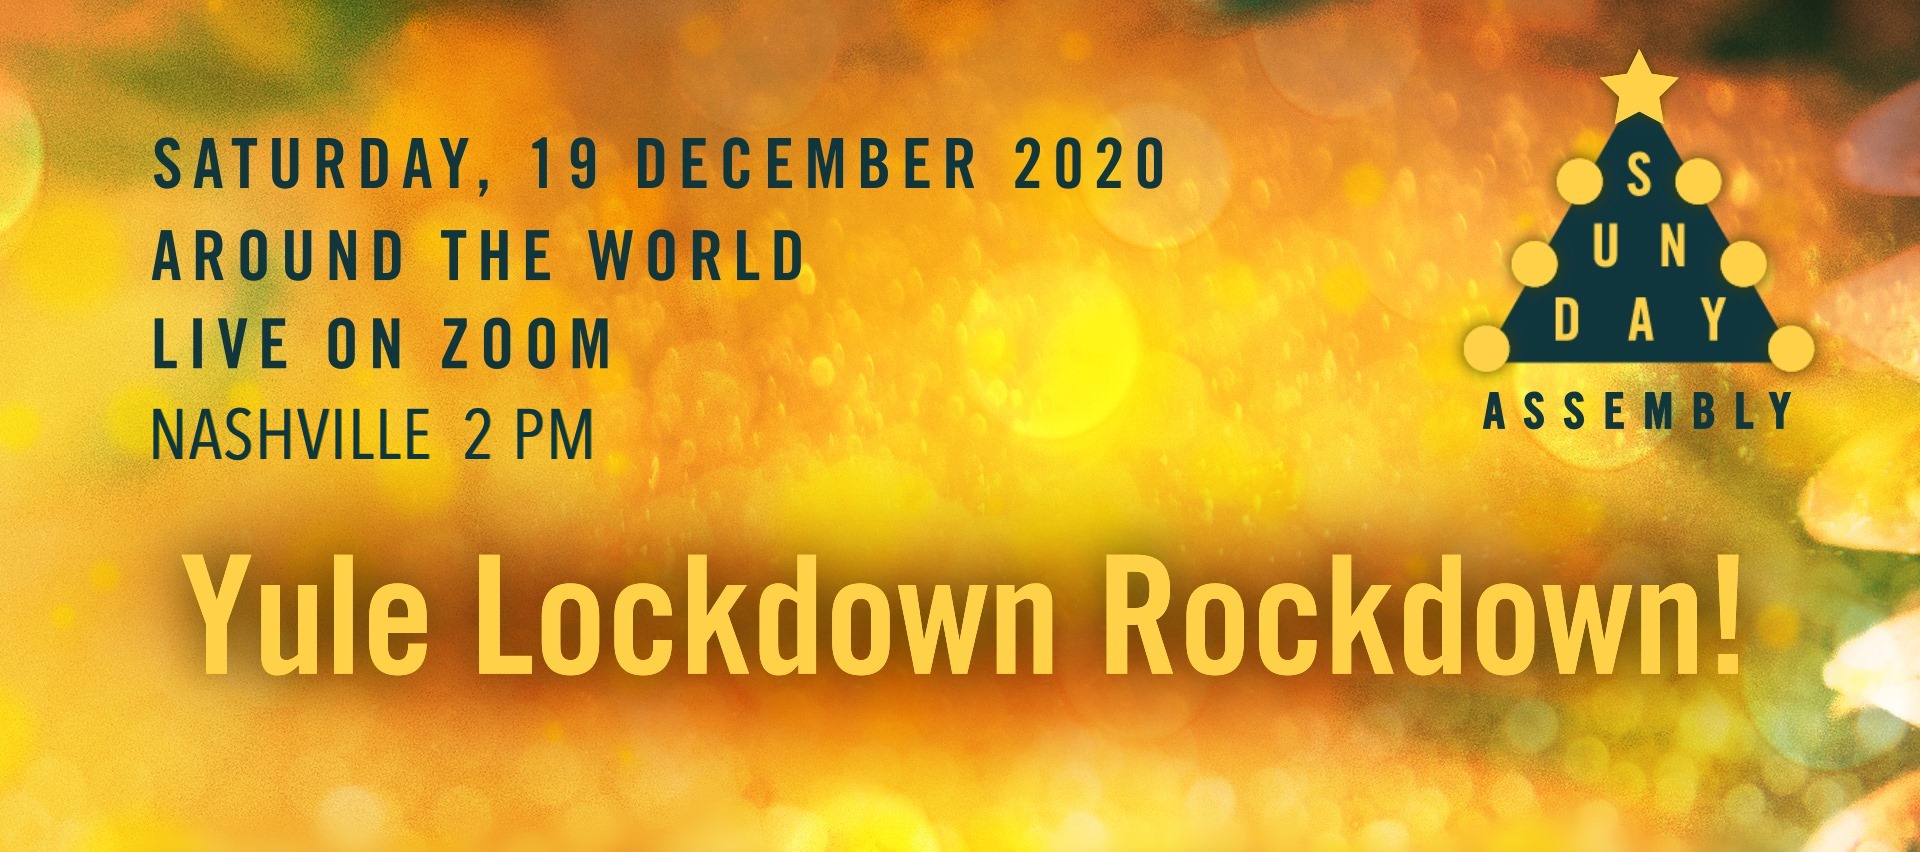 World YULE Lockdown Rockdown